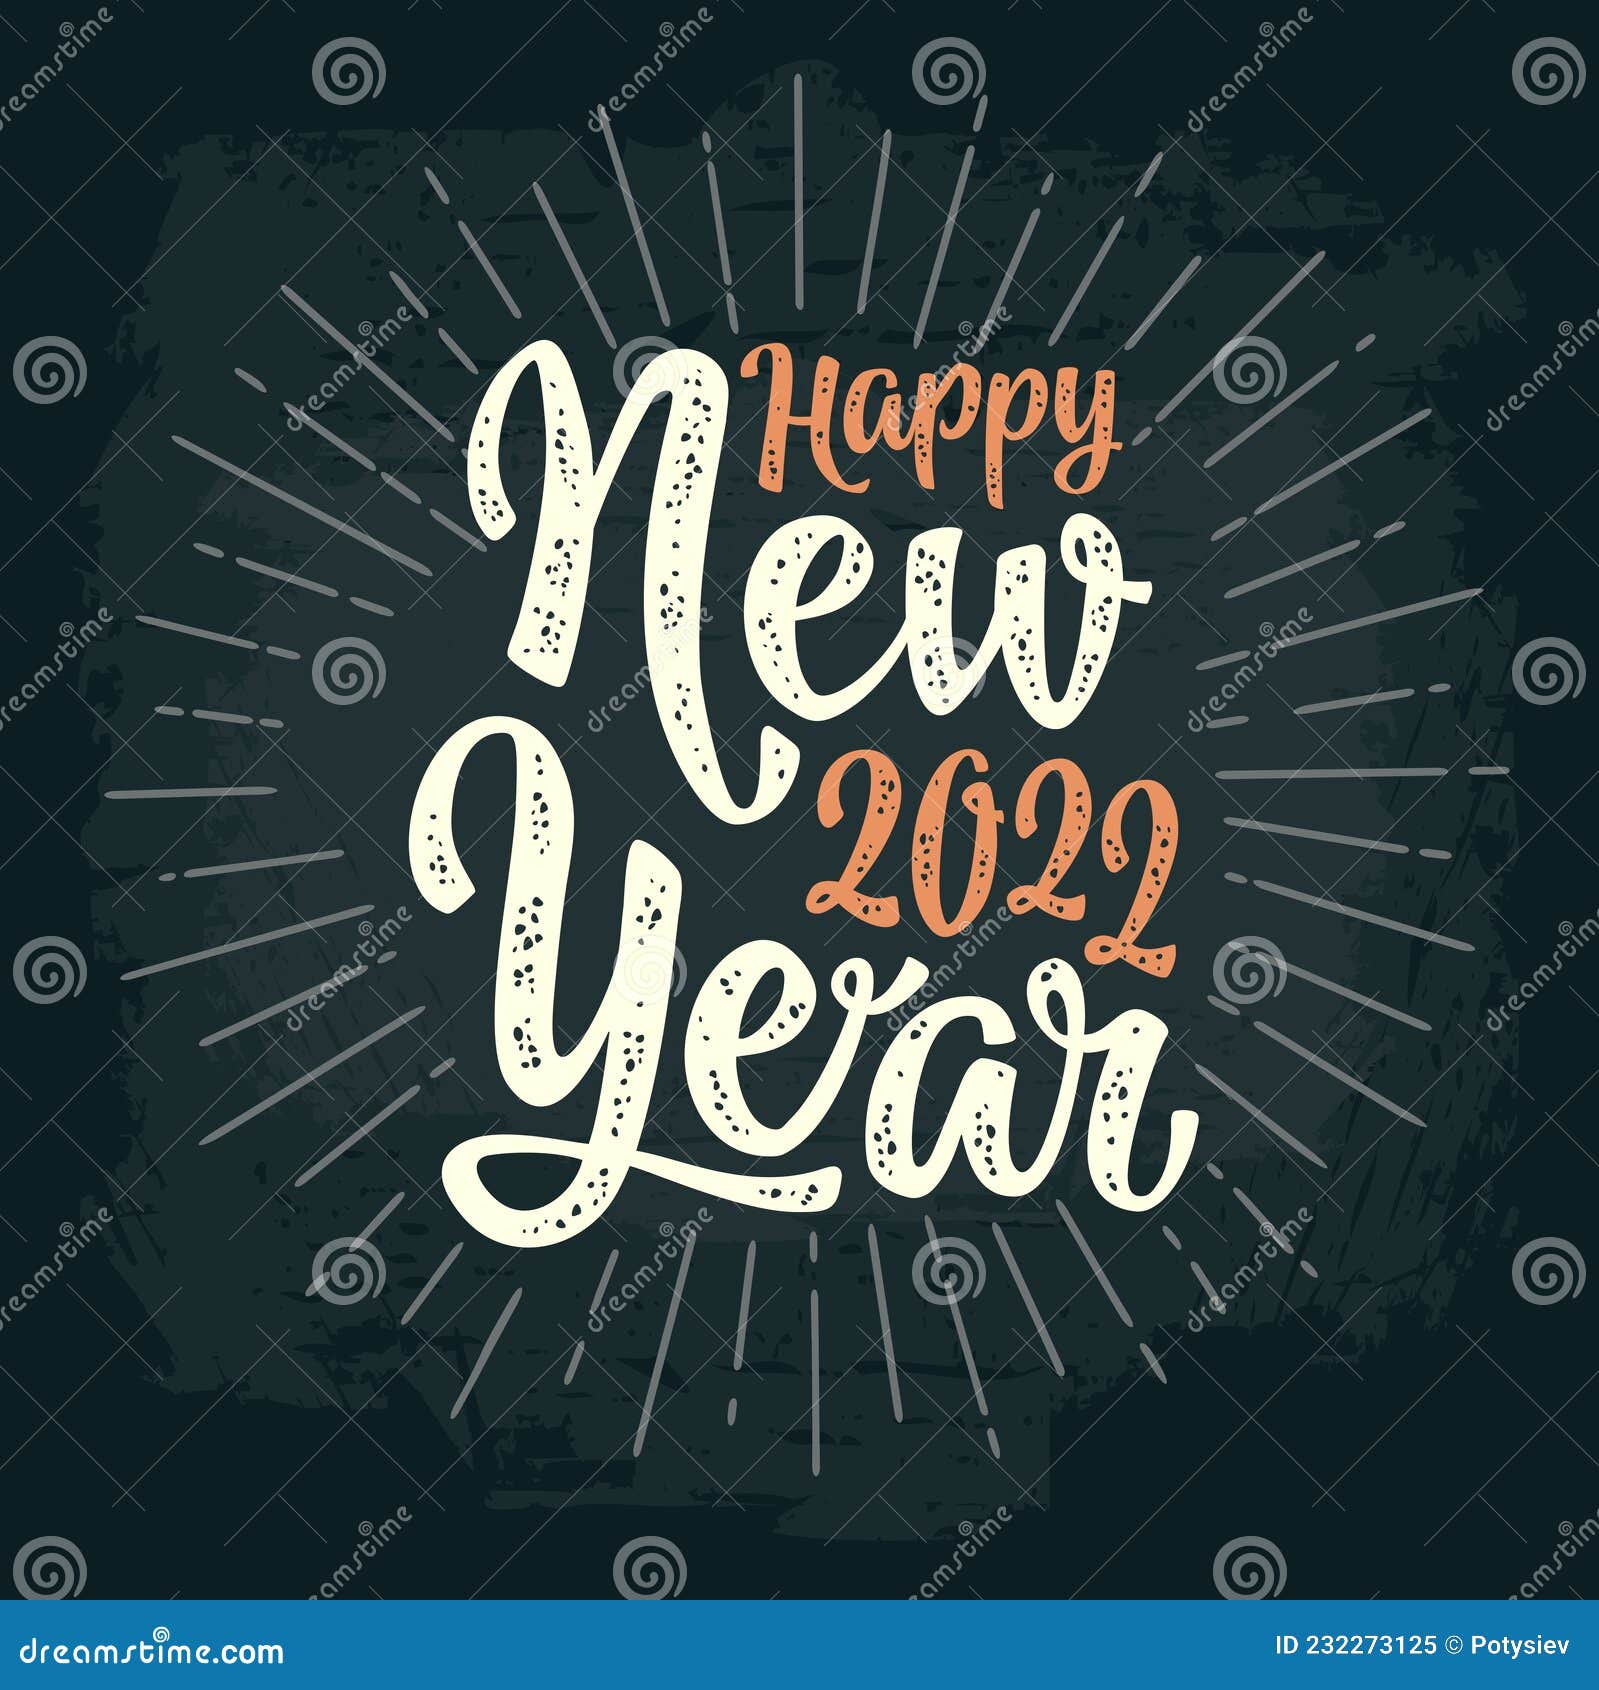 Hãy bắt đầu năm mới 2022 một cách tươi vui và đầy hy vọng! Bạn cần thật nhiều niềm vui để bắt đầu một năm mới thành công và chúc mừng. Hãy xem hình ảnh để tạo cho bạn thêm động lực và cảm nhận được sức sống của năm mới.